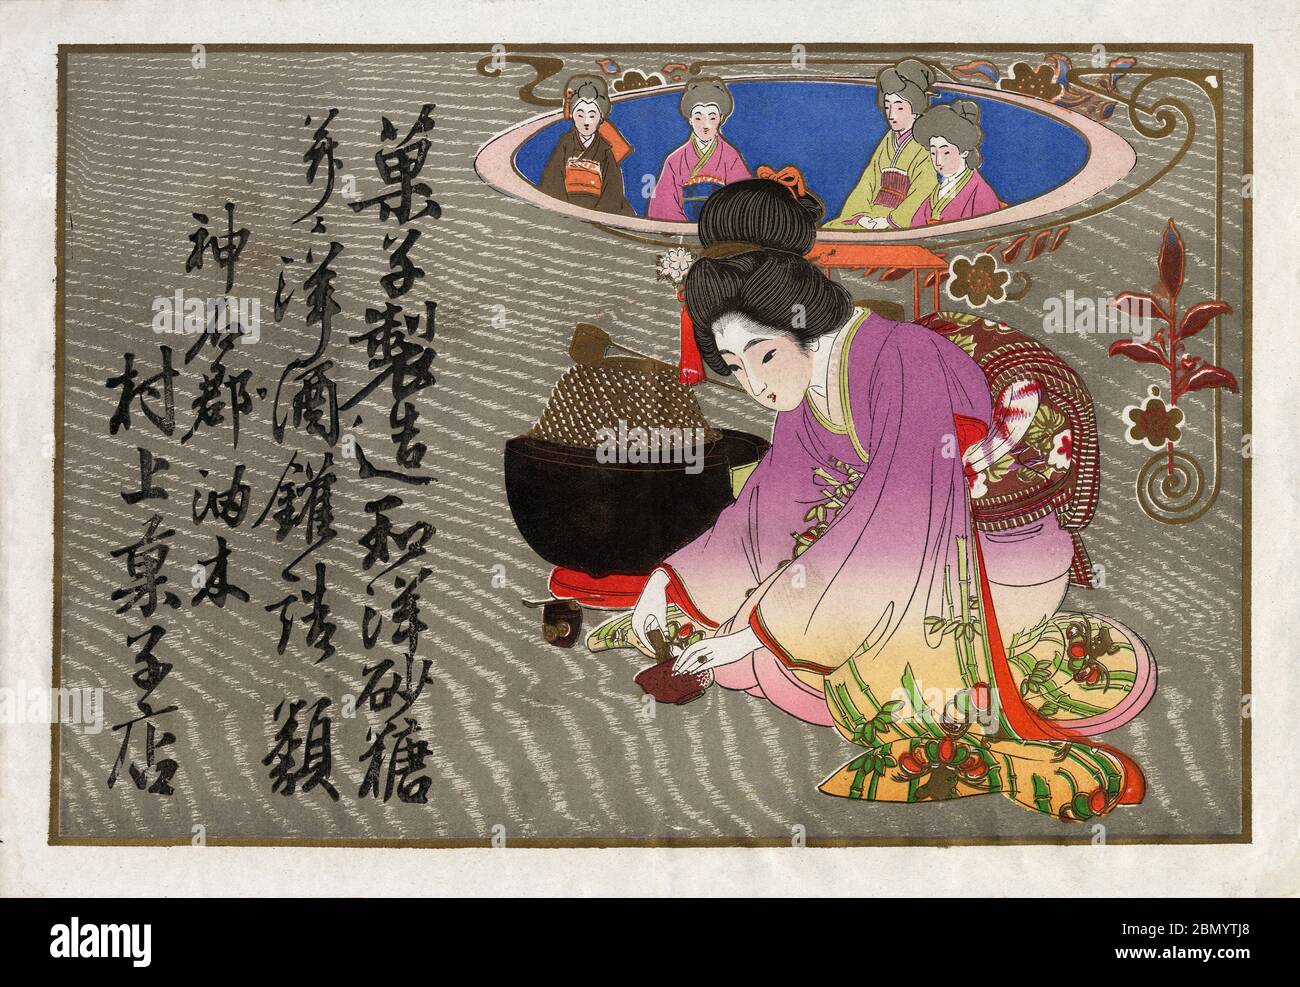 [ Japan der 1920er Jahre - Japanische Teezeremonie ] - Hikifuda (引札), ein Druck, der von lokalen Geschäften als Werbeflyer verwendet wird. Sie waren von den 1800er bis in die 1920er Jahre populär. Frau im Kimono bereitet Tee während einer traditionellen Teezeremonie zu. 20. Jahrhundert Vintage Werbung Flyer. Stockfoto